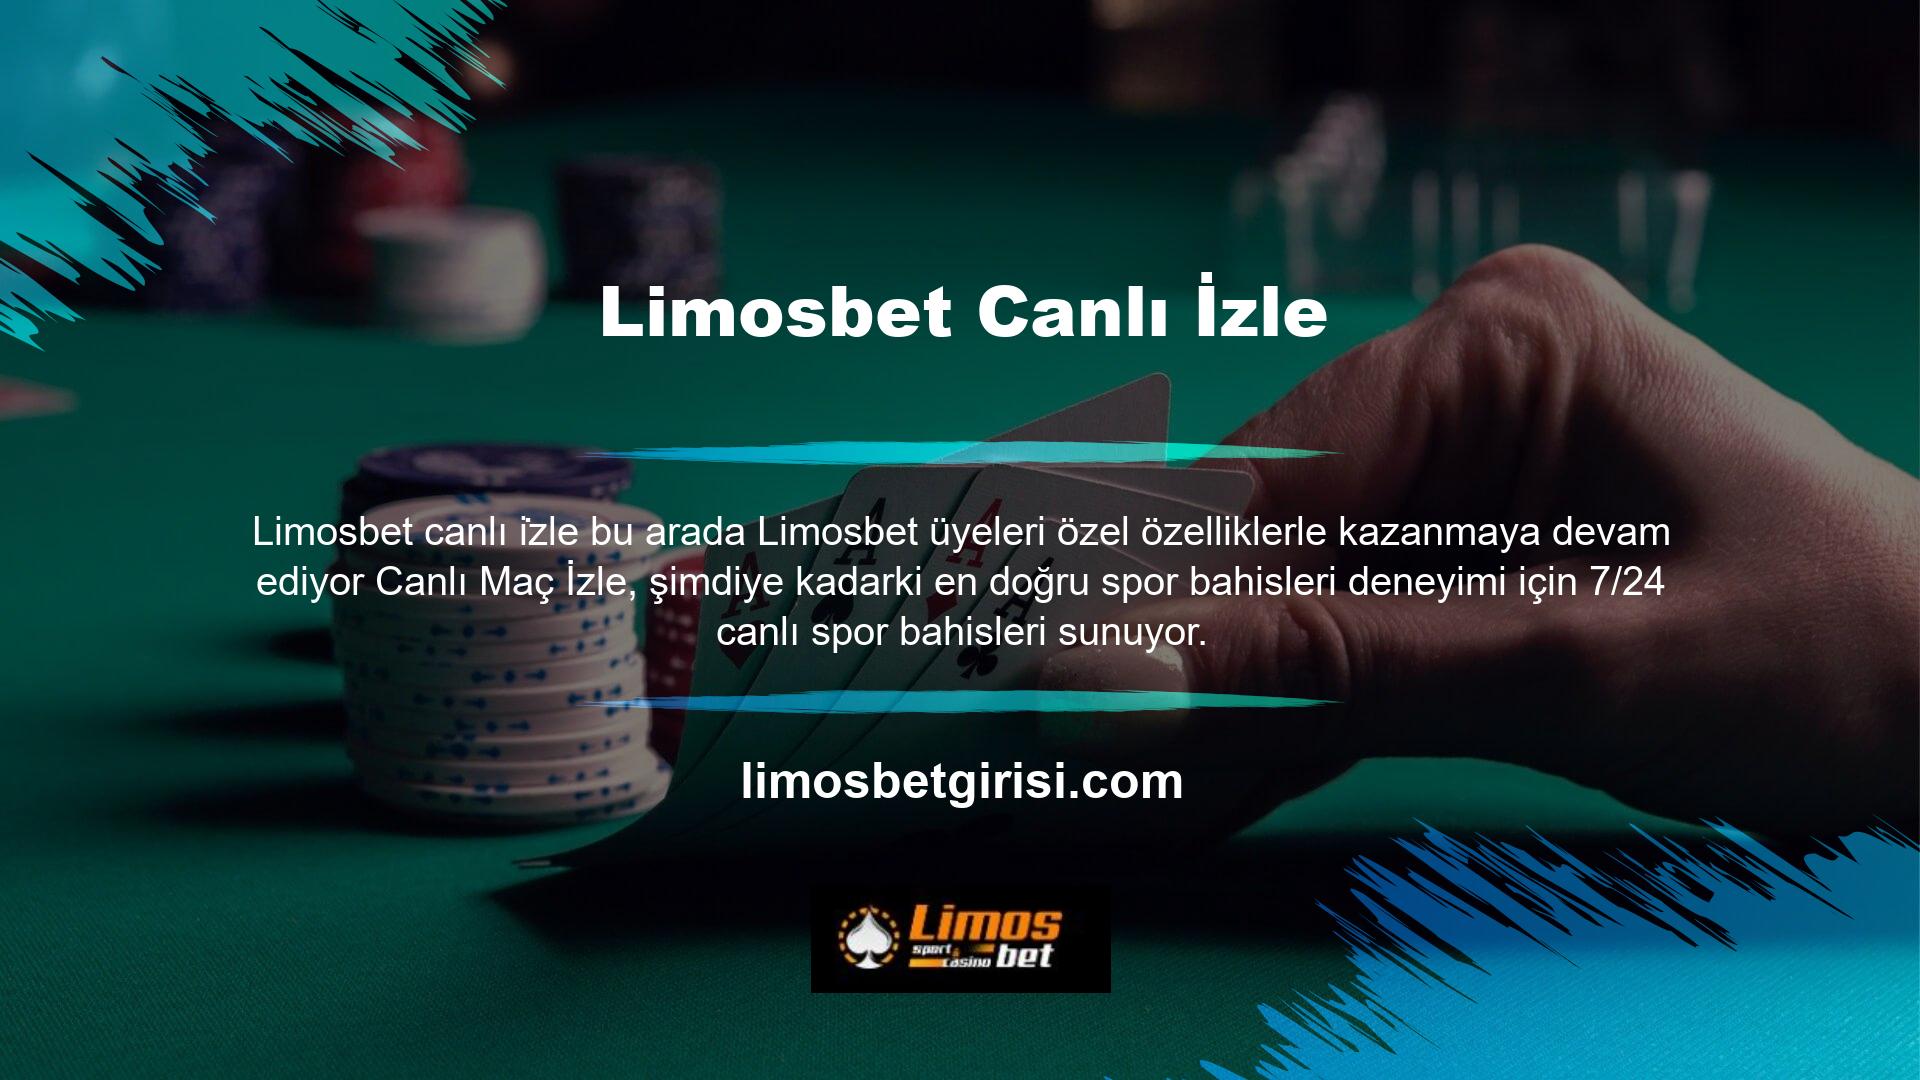 Aynı zamanda Limosbet casino siteleri üyelerine eğlence odaklı hizmetler sunarken canlı yayın imkanı sunarak gelir elde etme ve müşteri memnuniyetini sağlama amaçlıdır